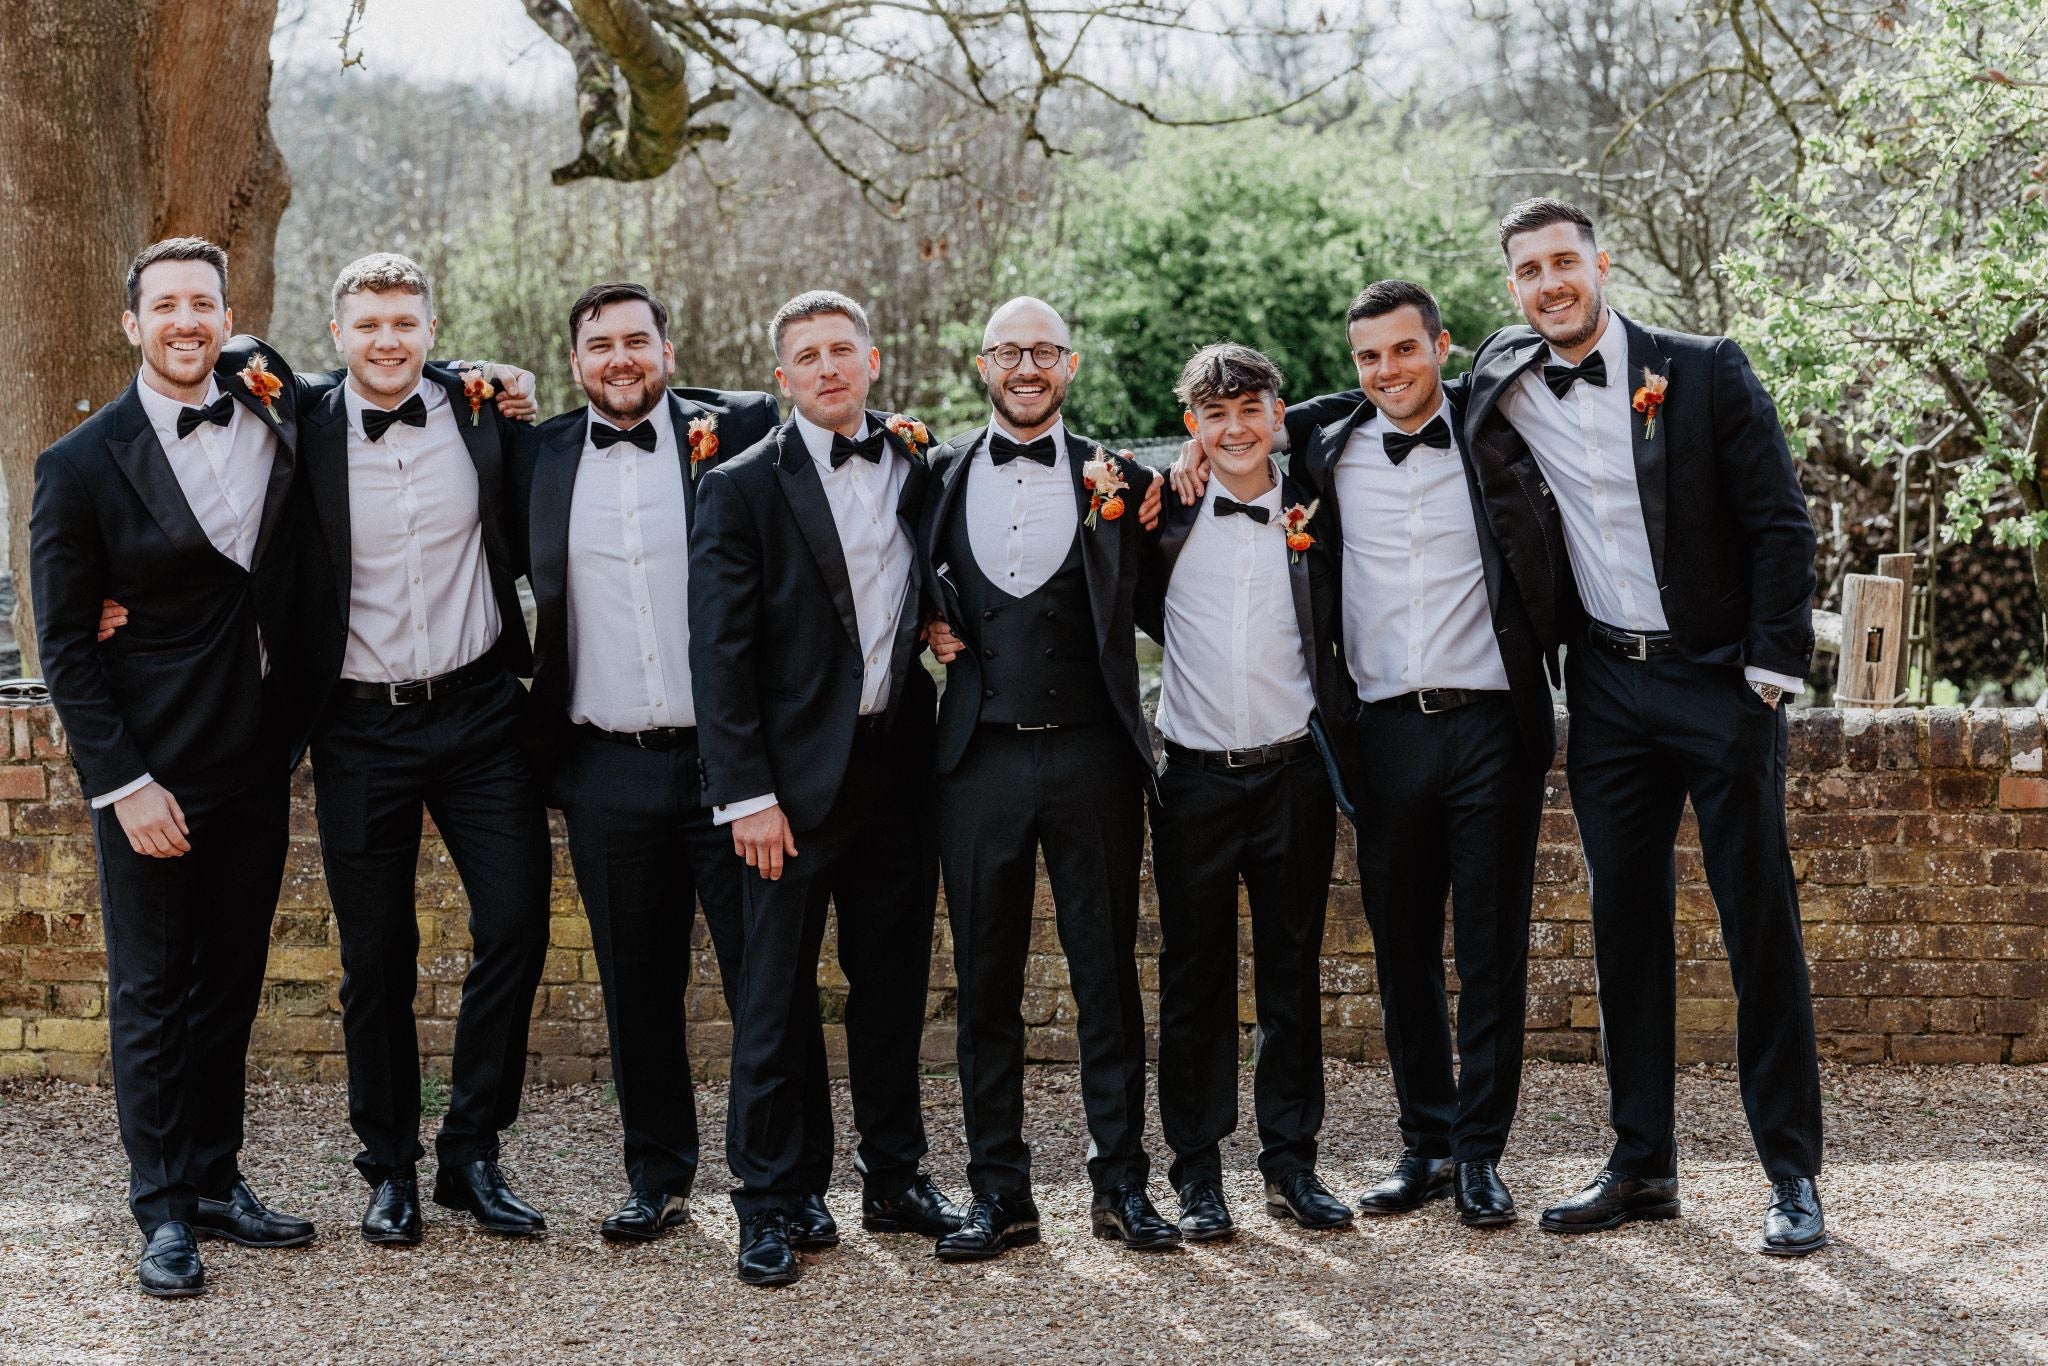 Groom and groomsmen in black tie with matching orange flowers